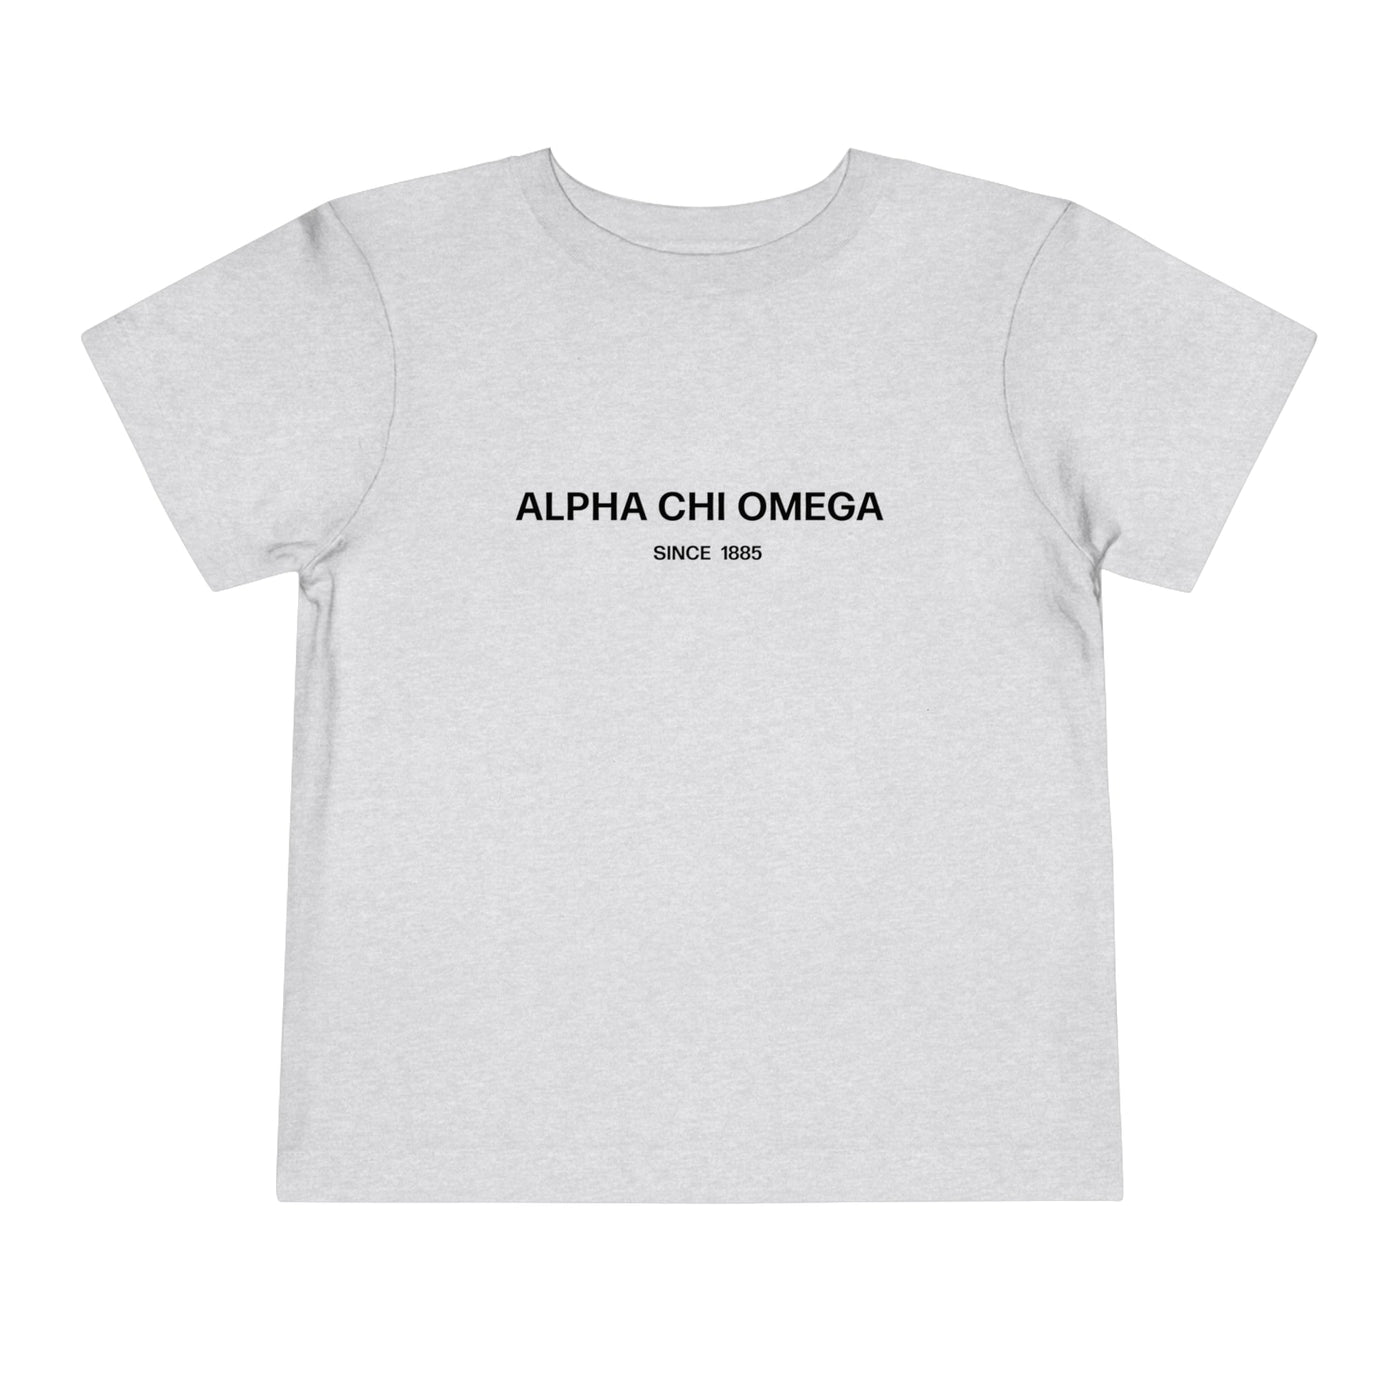 Alpha Chi Omega Sorority Baby Tee Crop Top